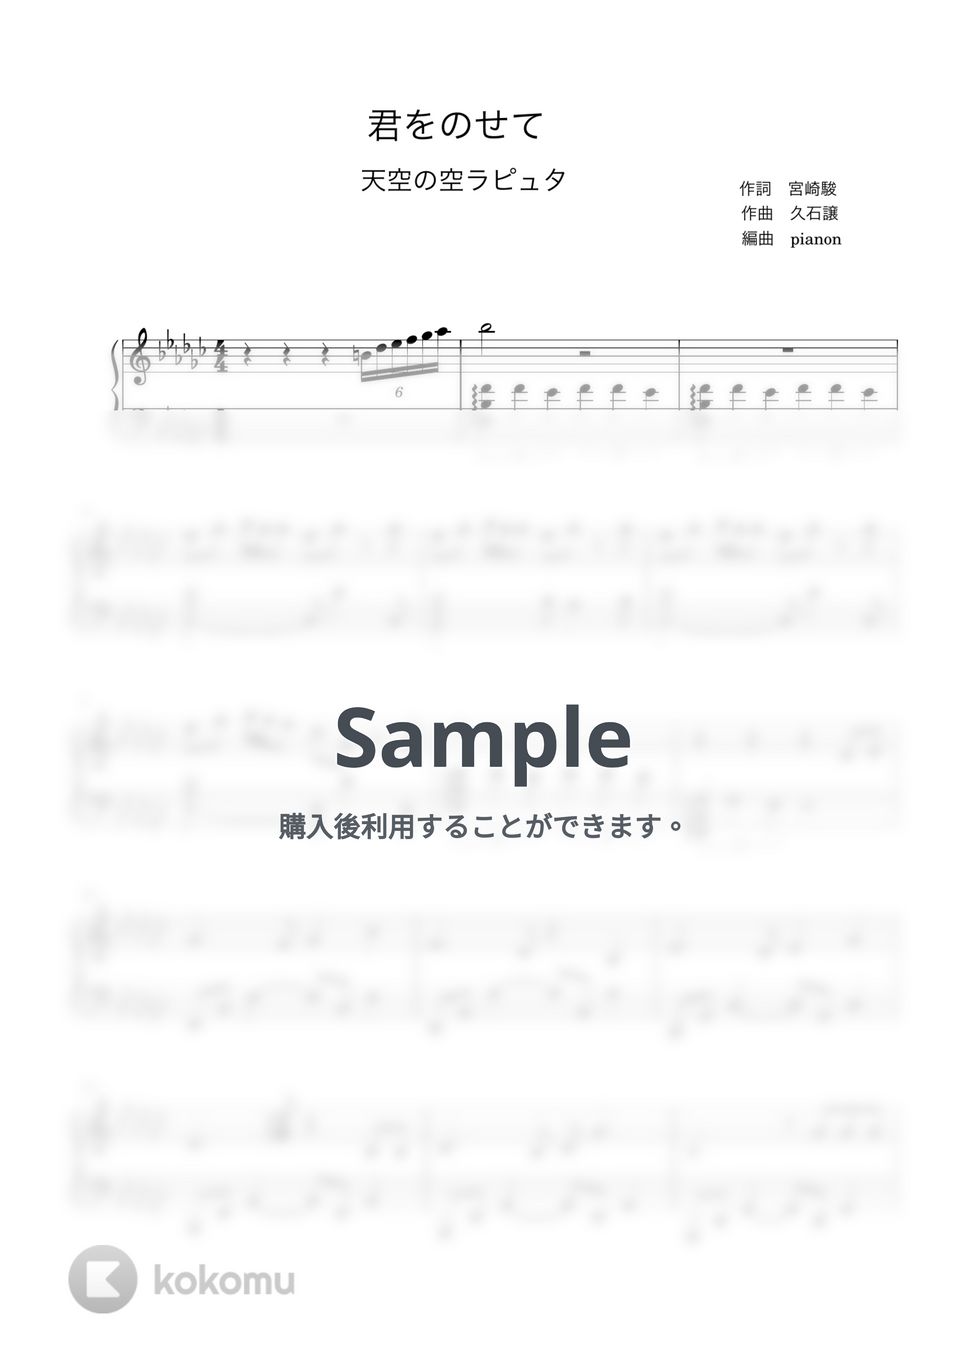 久石譲 - 君をのせて (ピアノ中級ソロ) by pianon